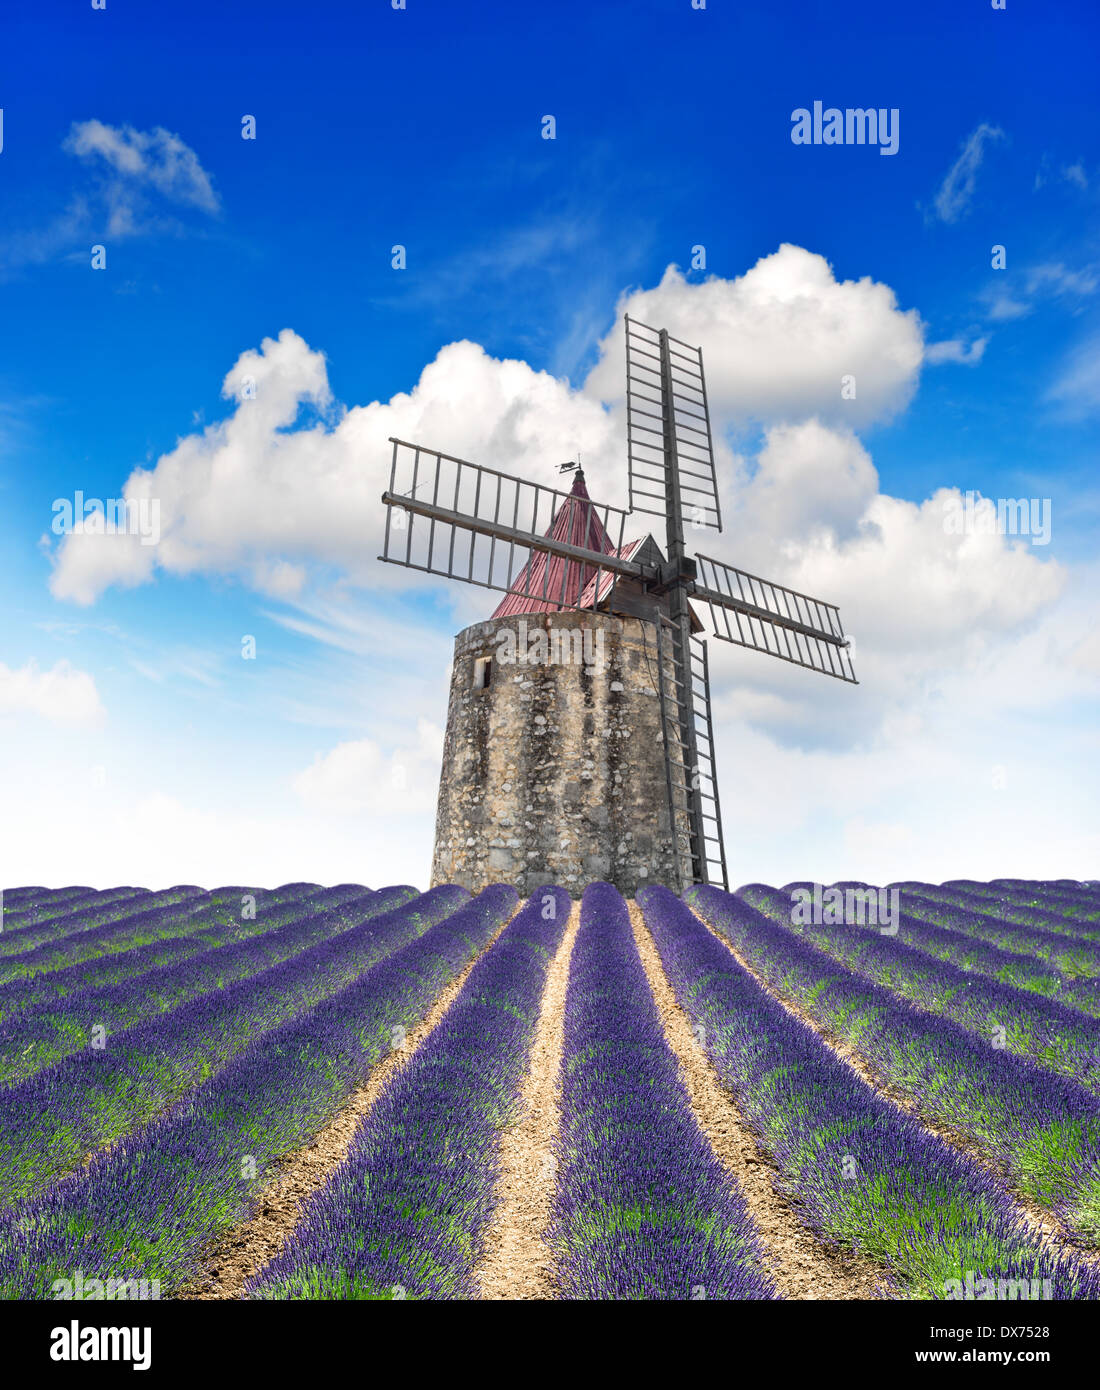 Blühende Lavendelfeld mit Windmühle und blauem Himmel. Landschaft in der Provence, Frankreich Stockfoto